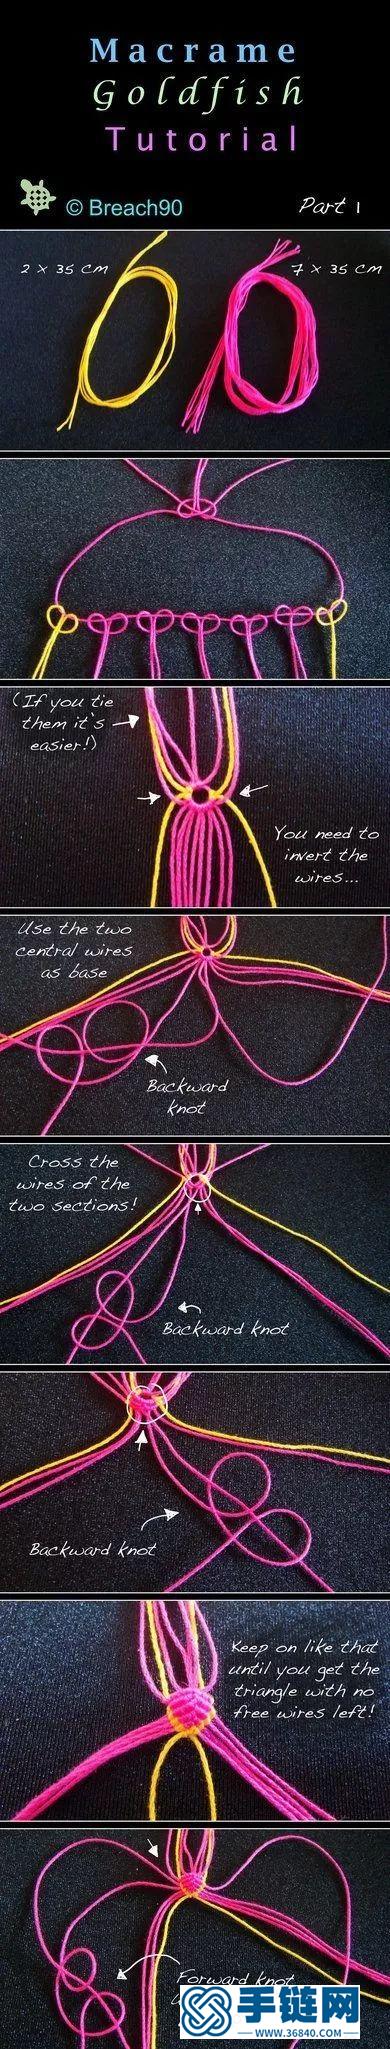 几根绳子就能编手链和饰品挂件，很多作品哦